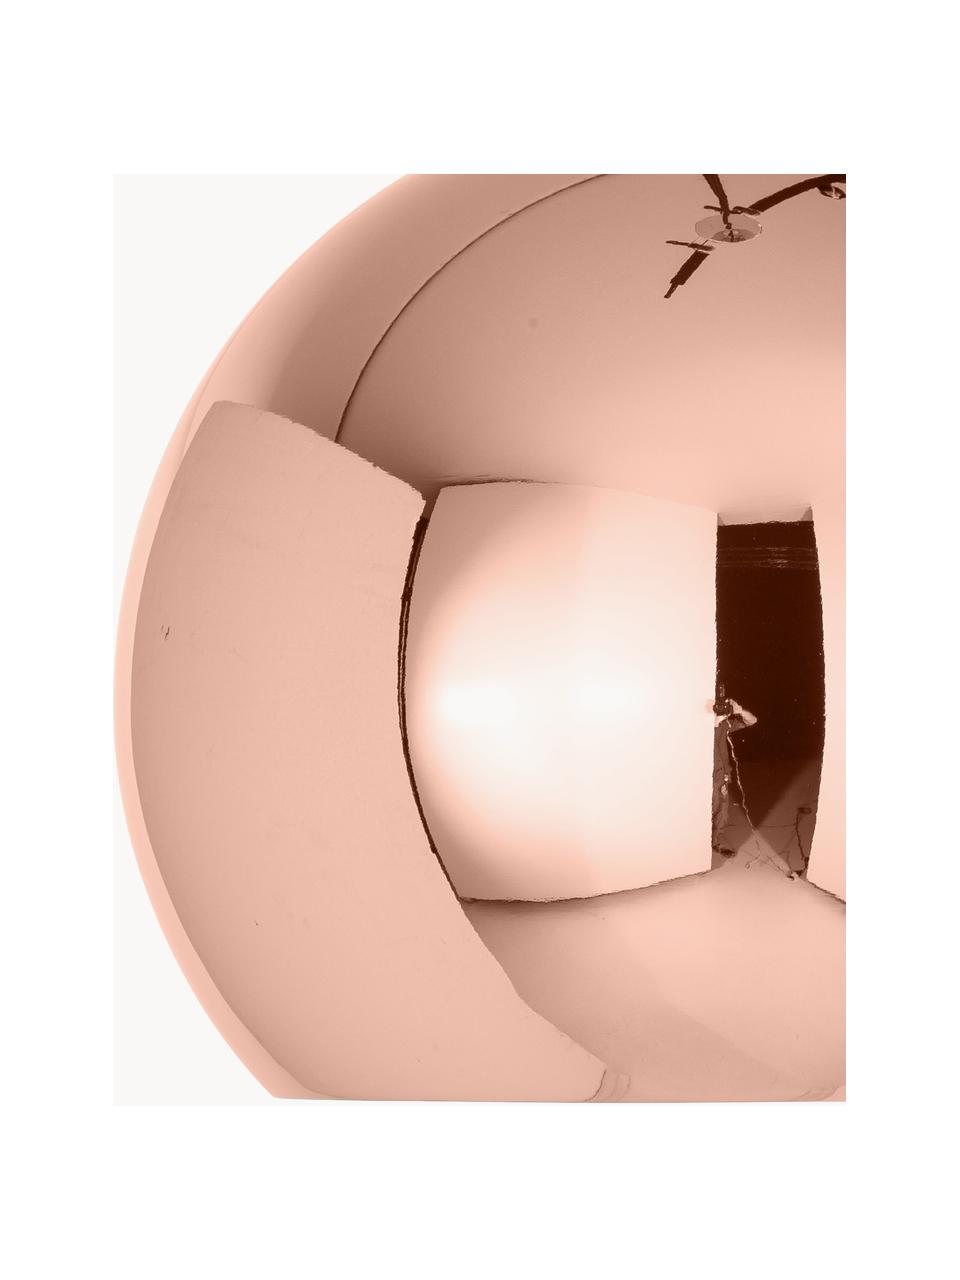 Lampa wisząca Ball, Odcienie miedzi, Ø 12 x W 10 cm